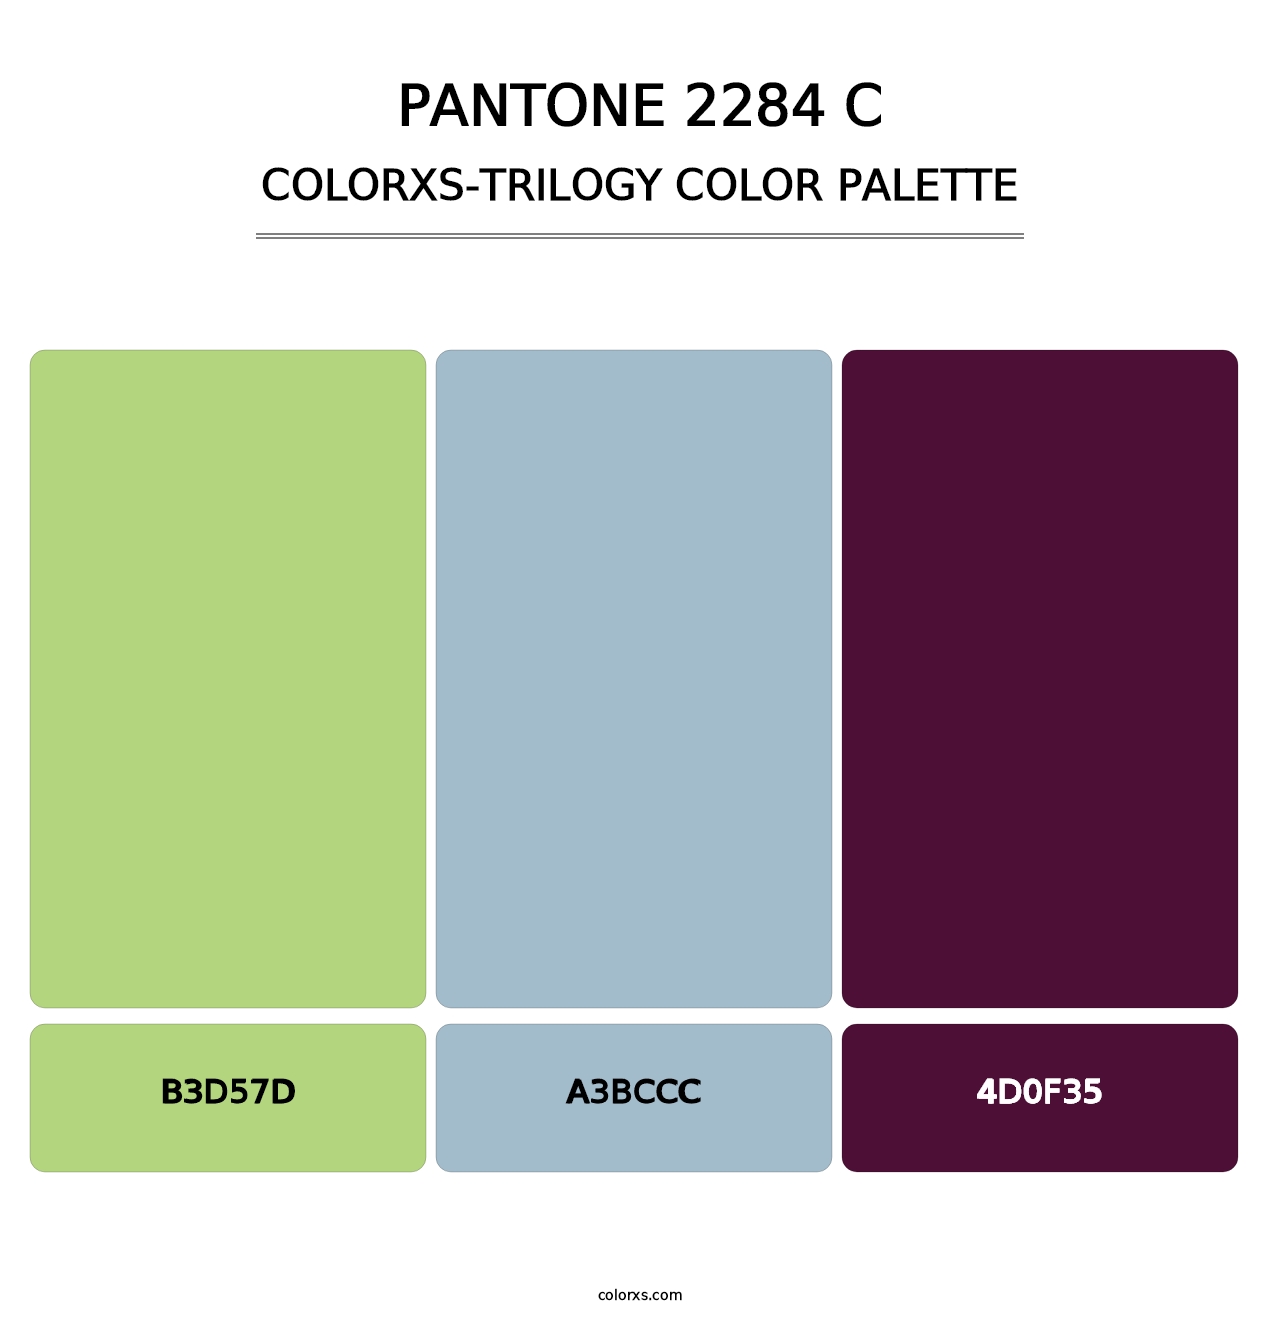 PANTONE 2284 C - Colorxs Trilogy Palette